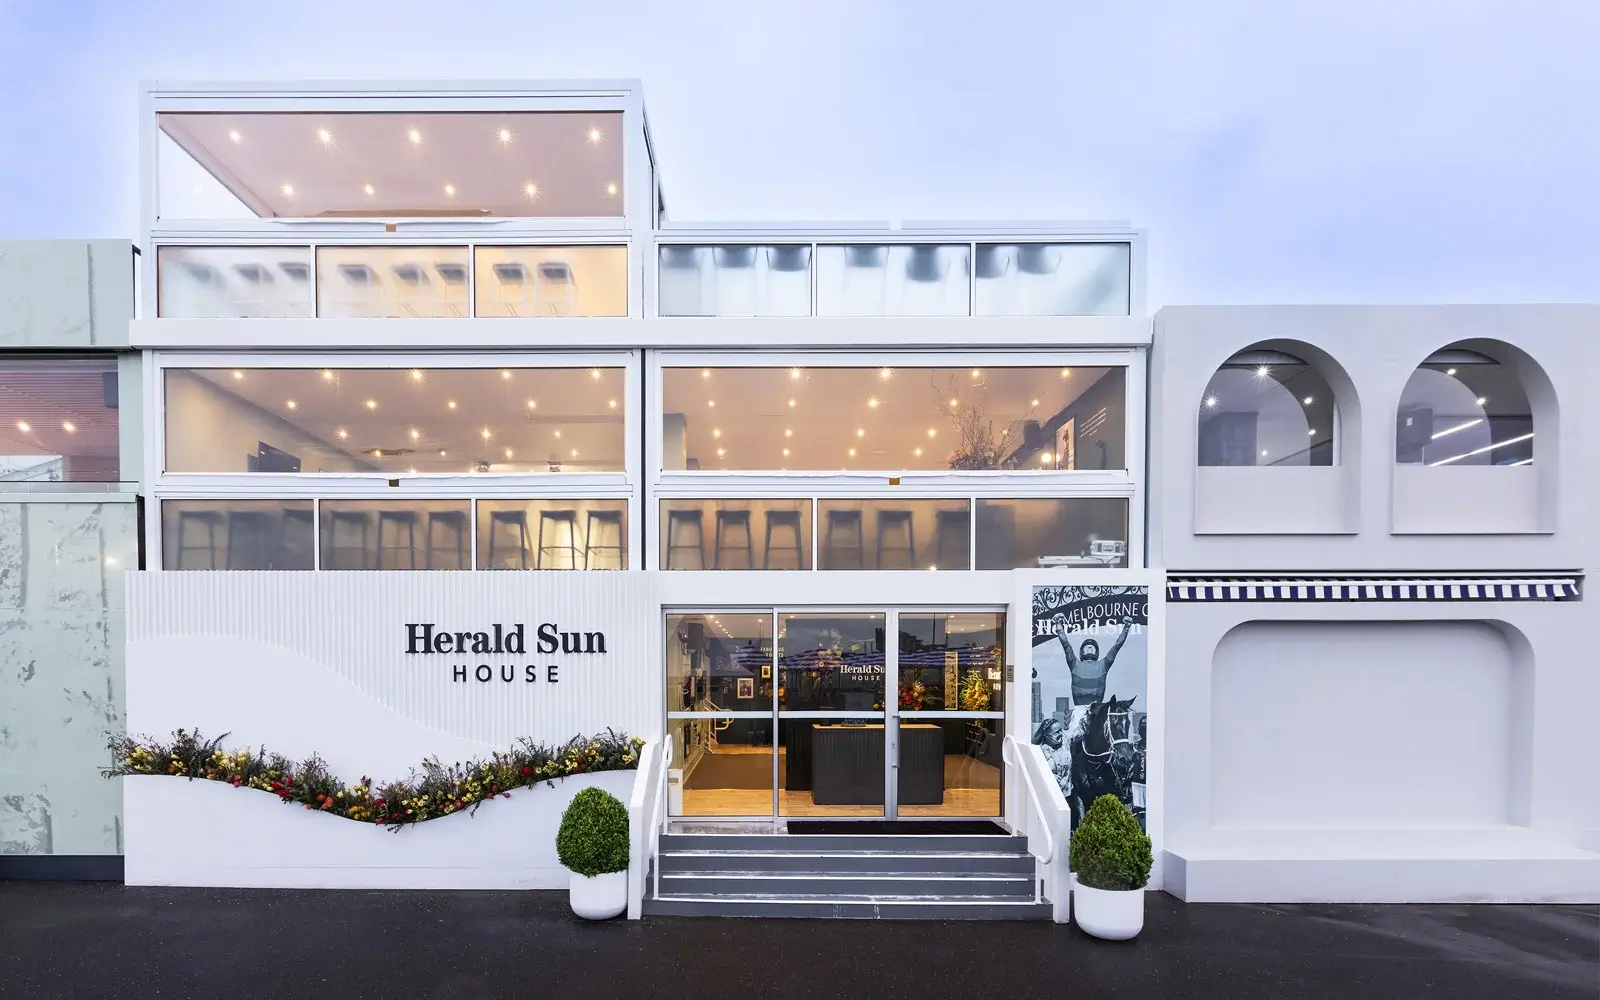 Herald Sun House